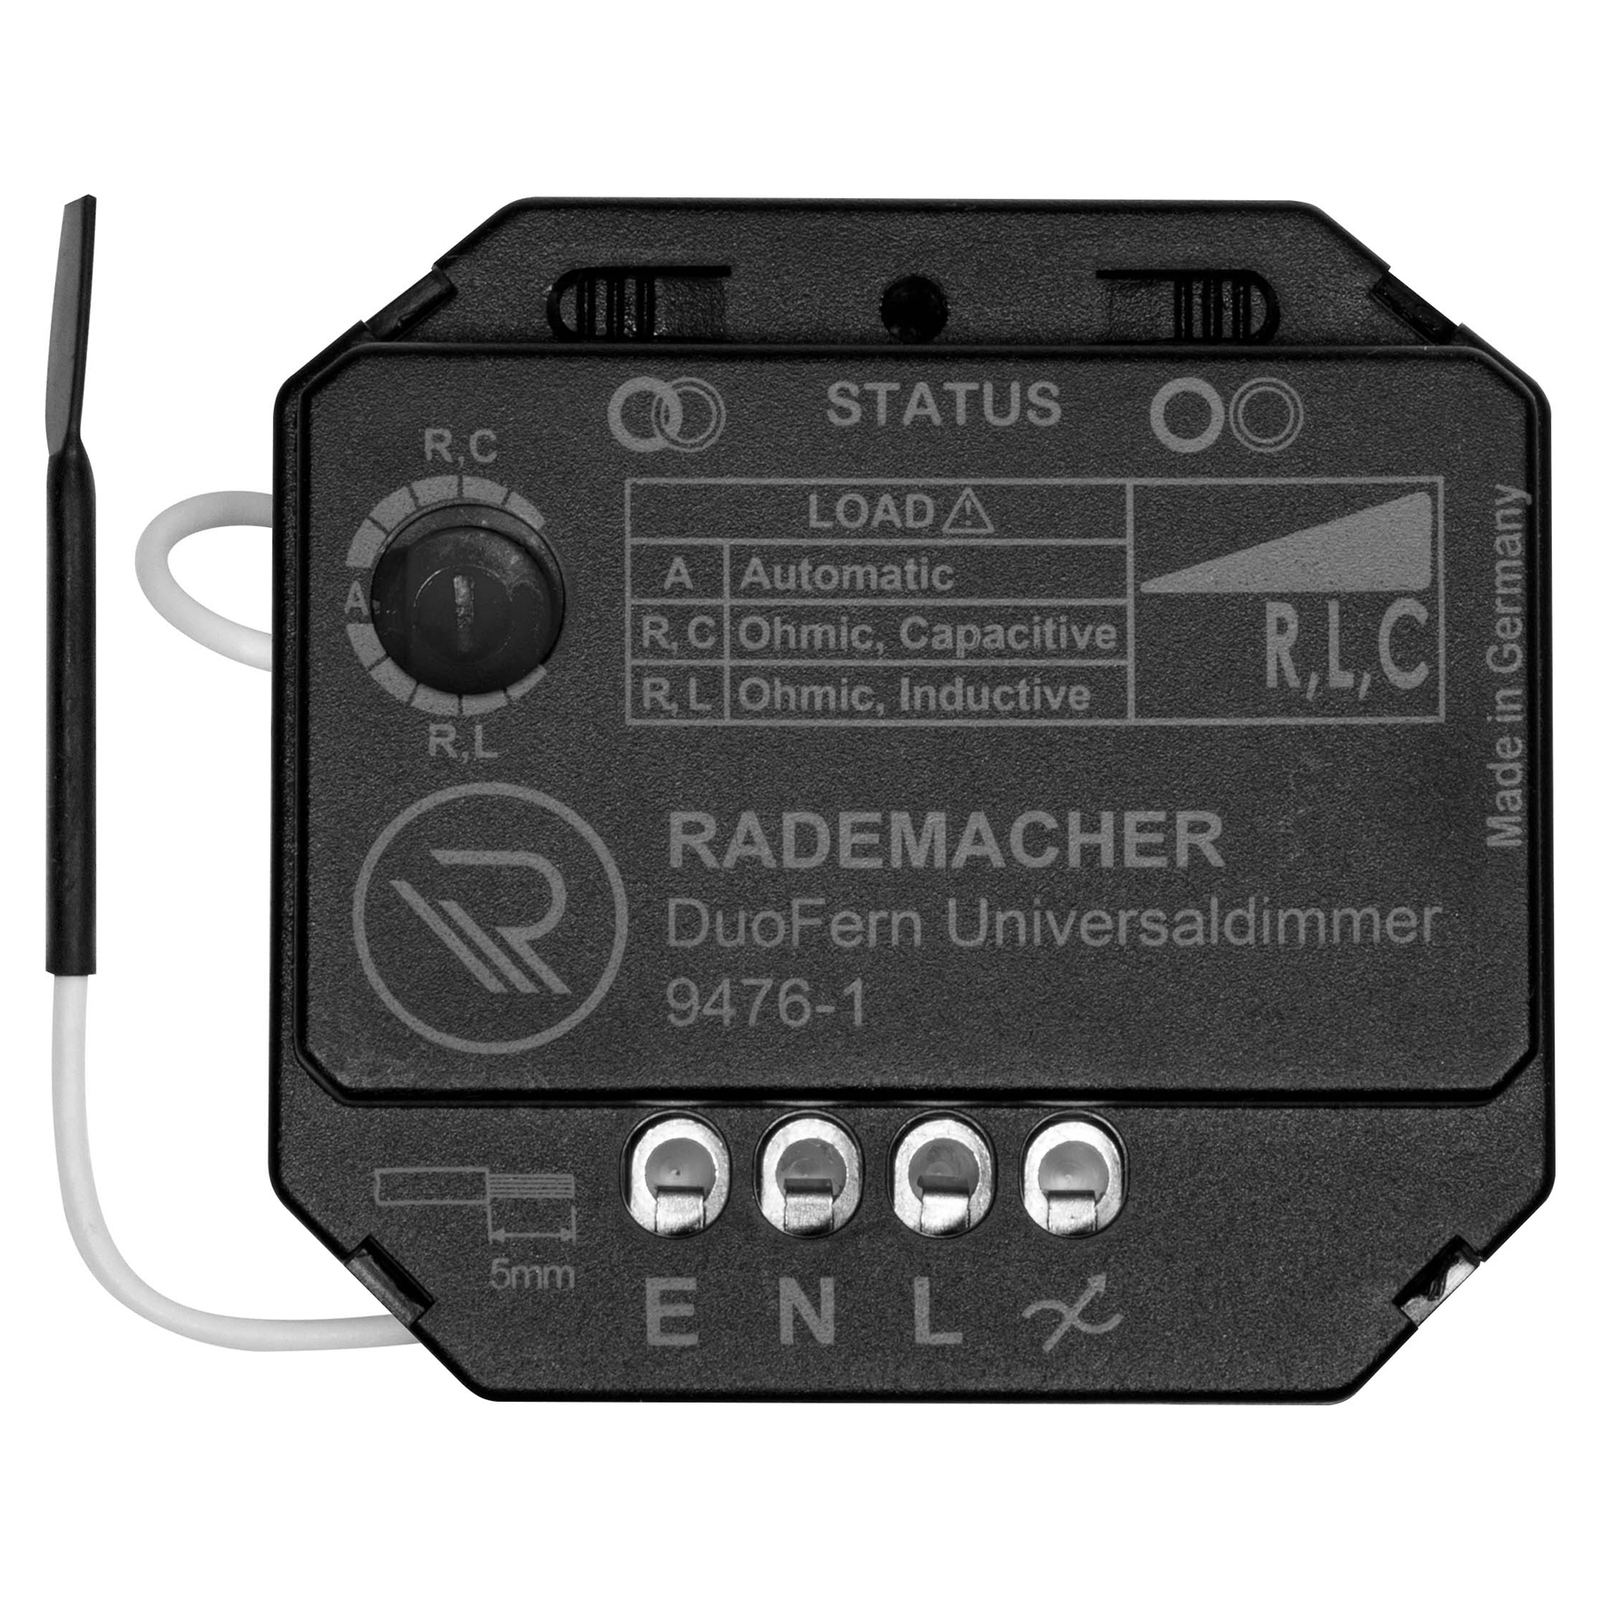 Rademacher DuoFern universaldæmper, R, L, C